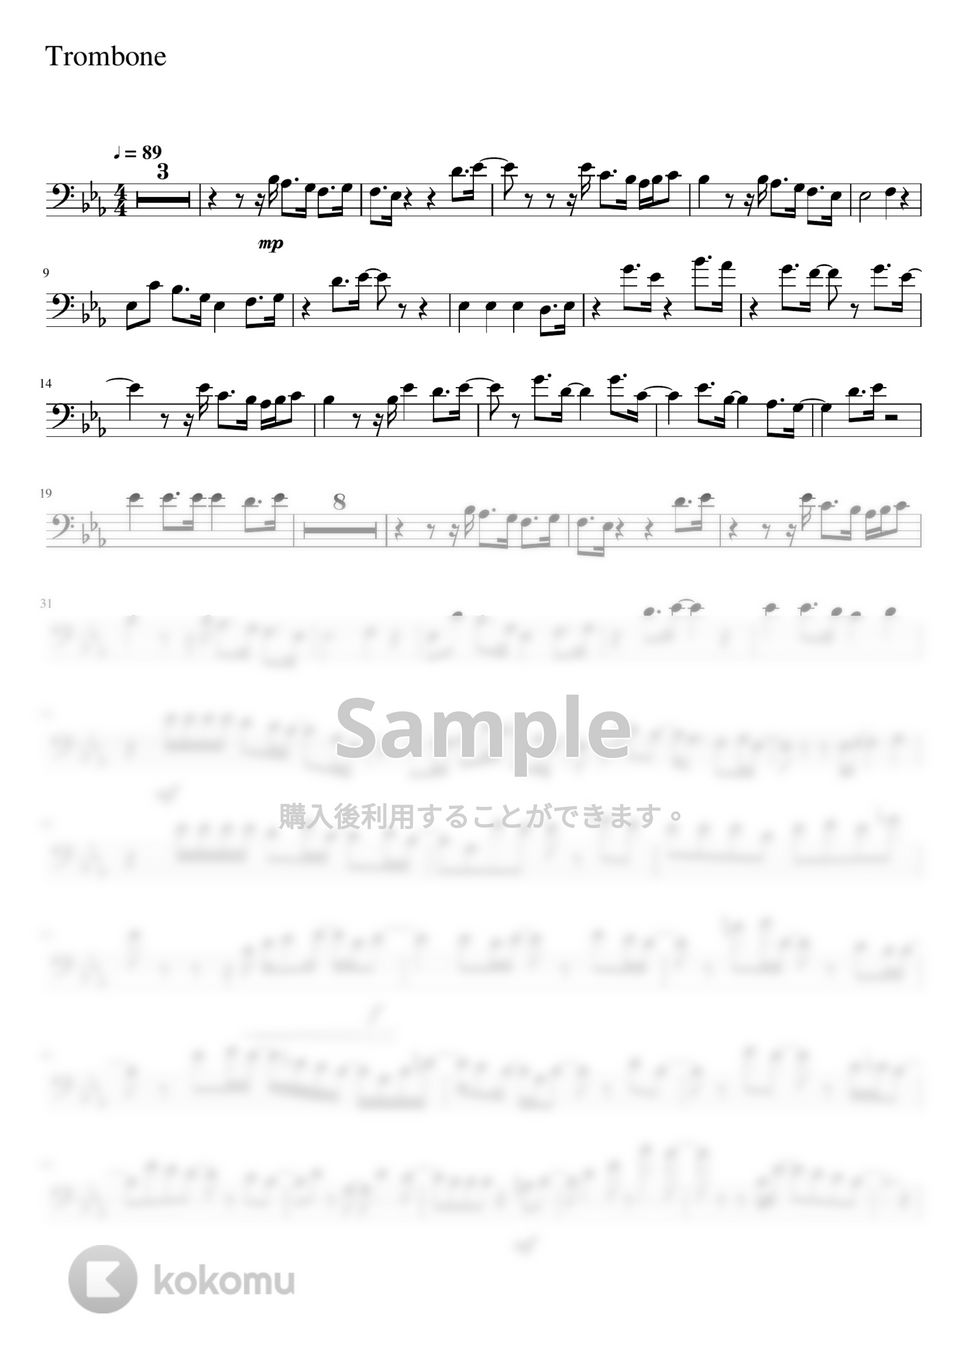 星野 源 - 不思議 (-Trombone Solo- 原キー) by Creampuff